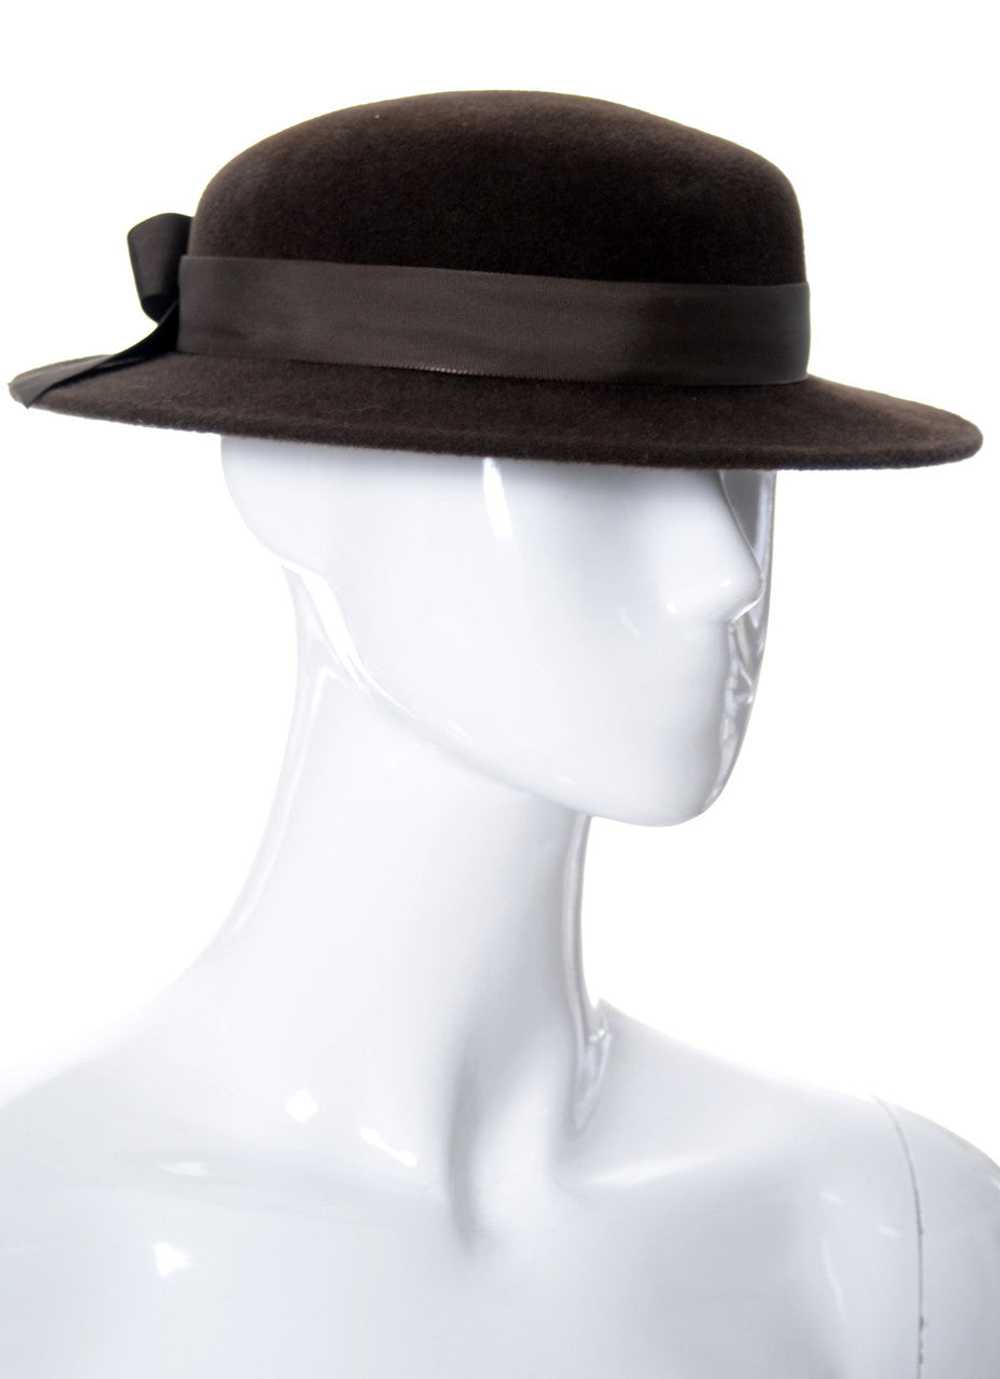 Frank Olive I Magnin Vintage Brown Wool Felt Hat - image 4